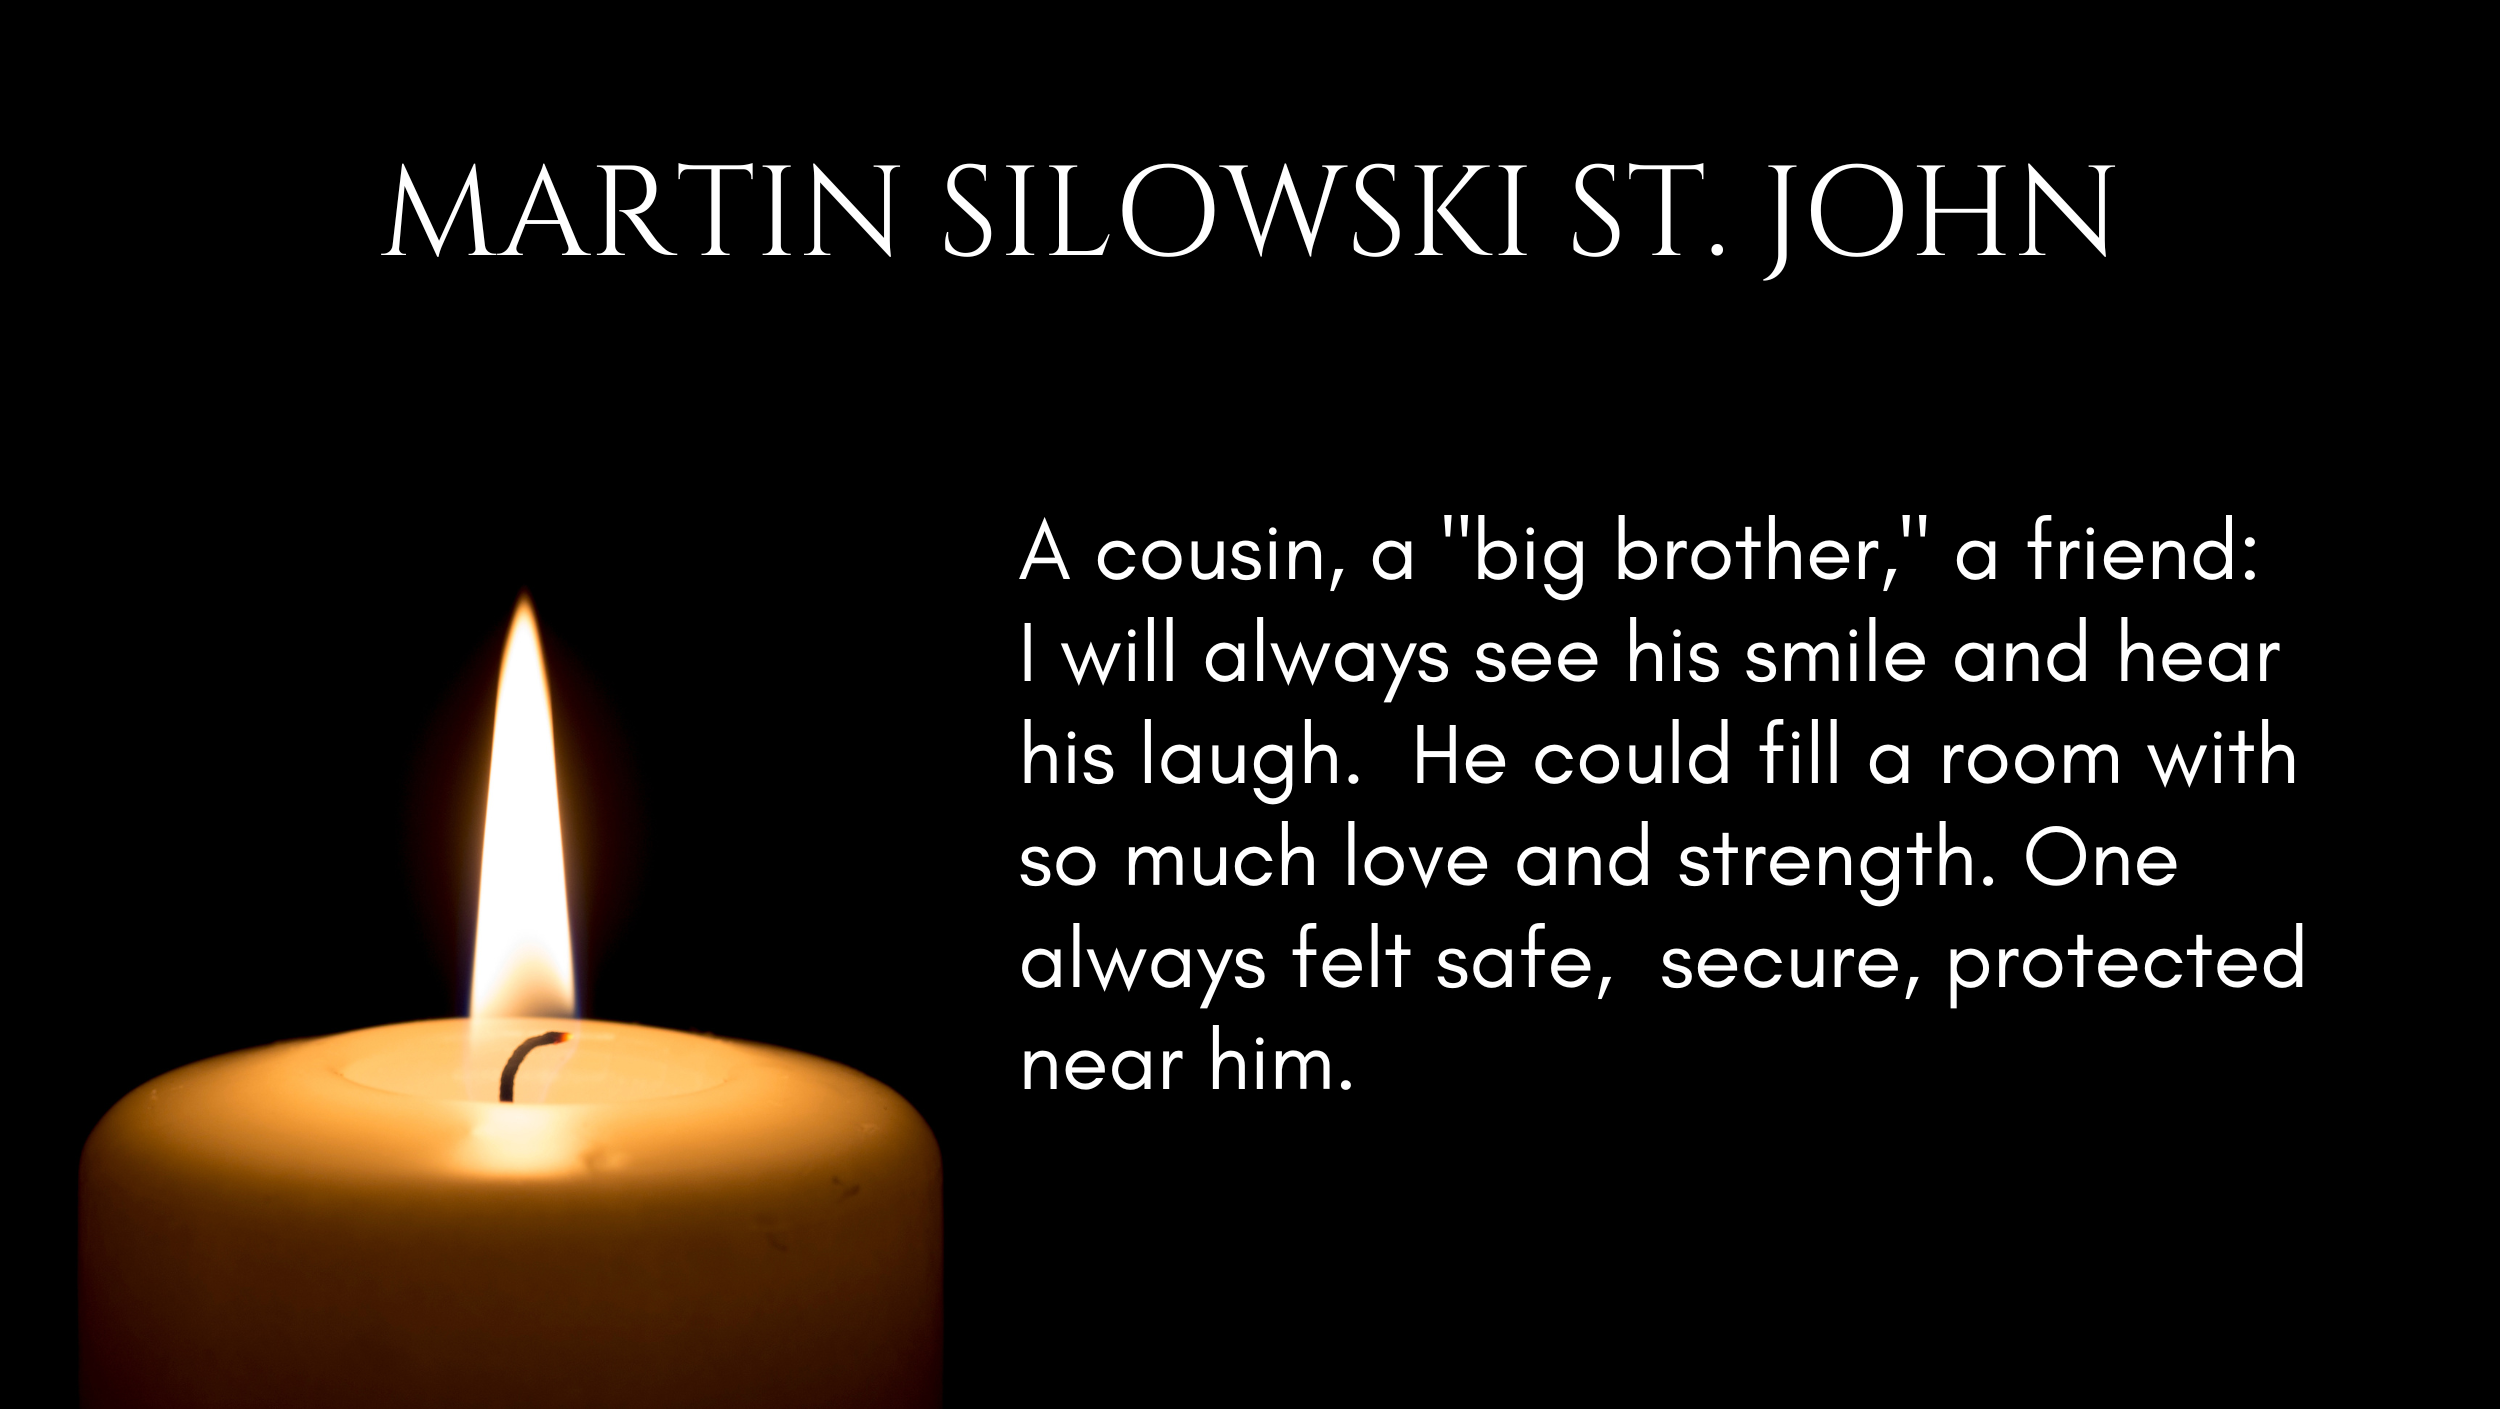 St. John Martin Silowski.png